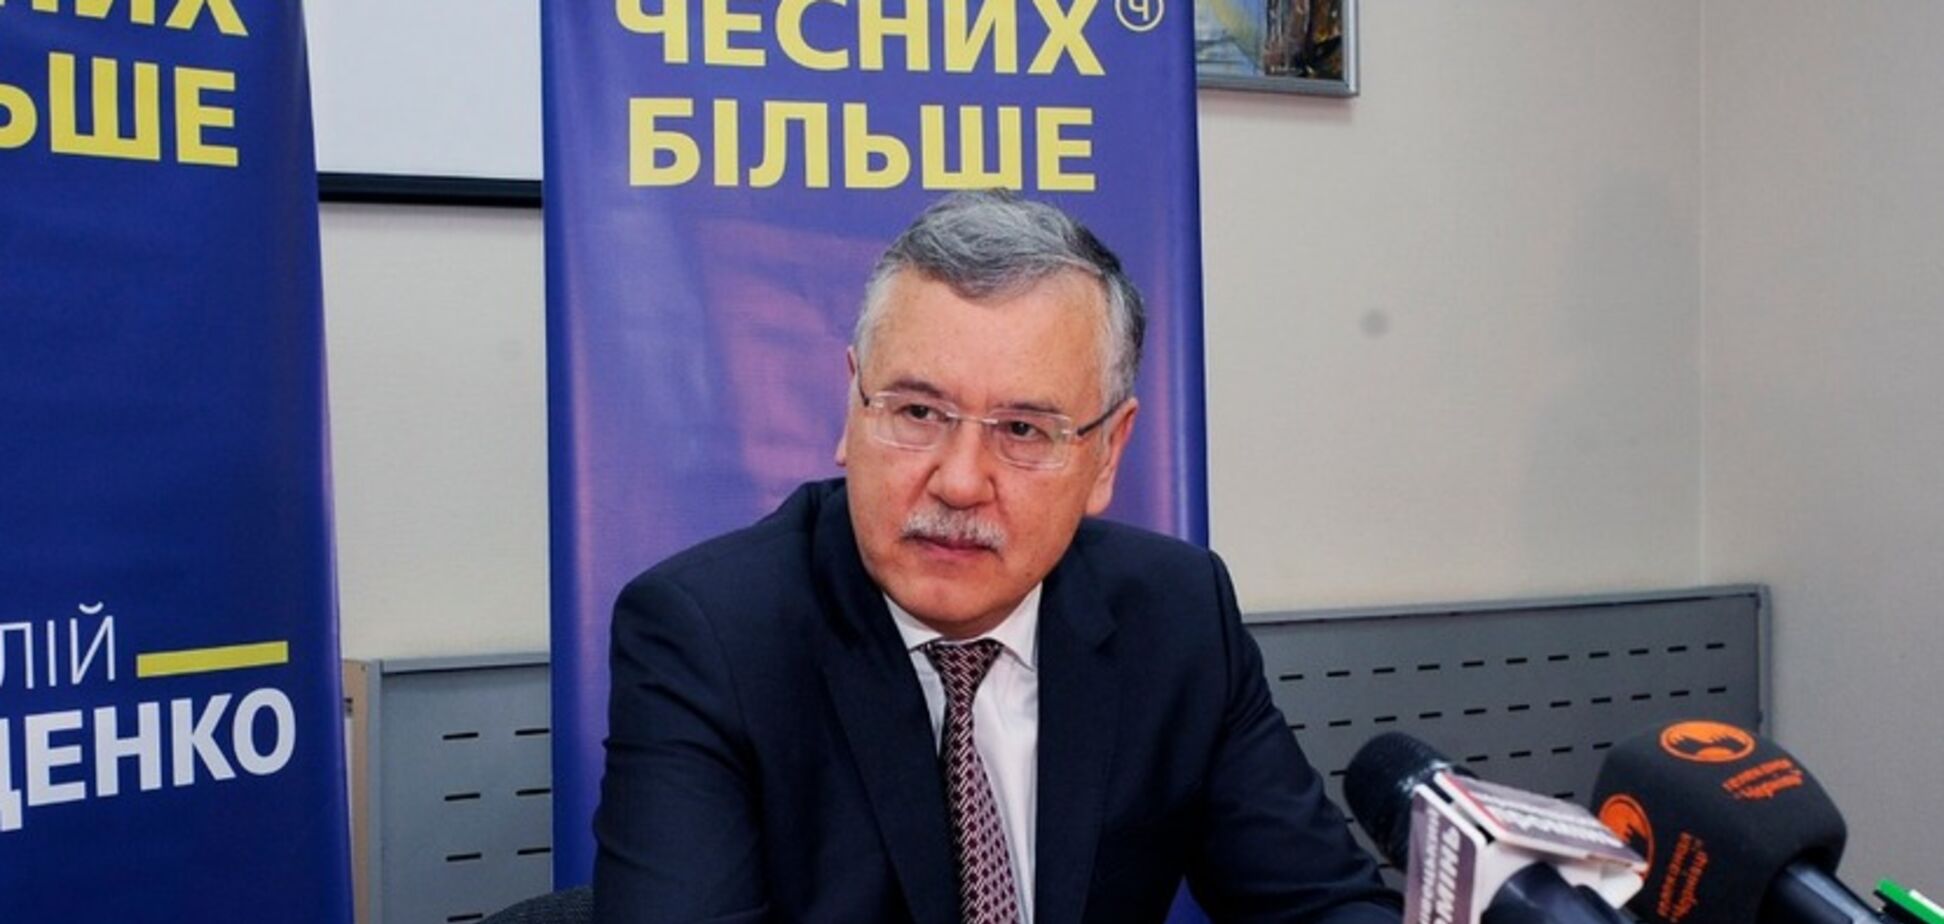 Гриценко рассказал, как получит двойную победу на выборах-2019